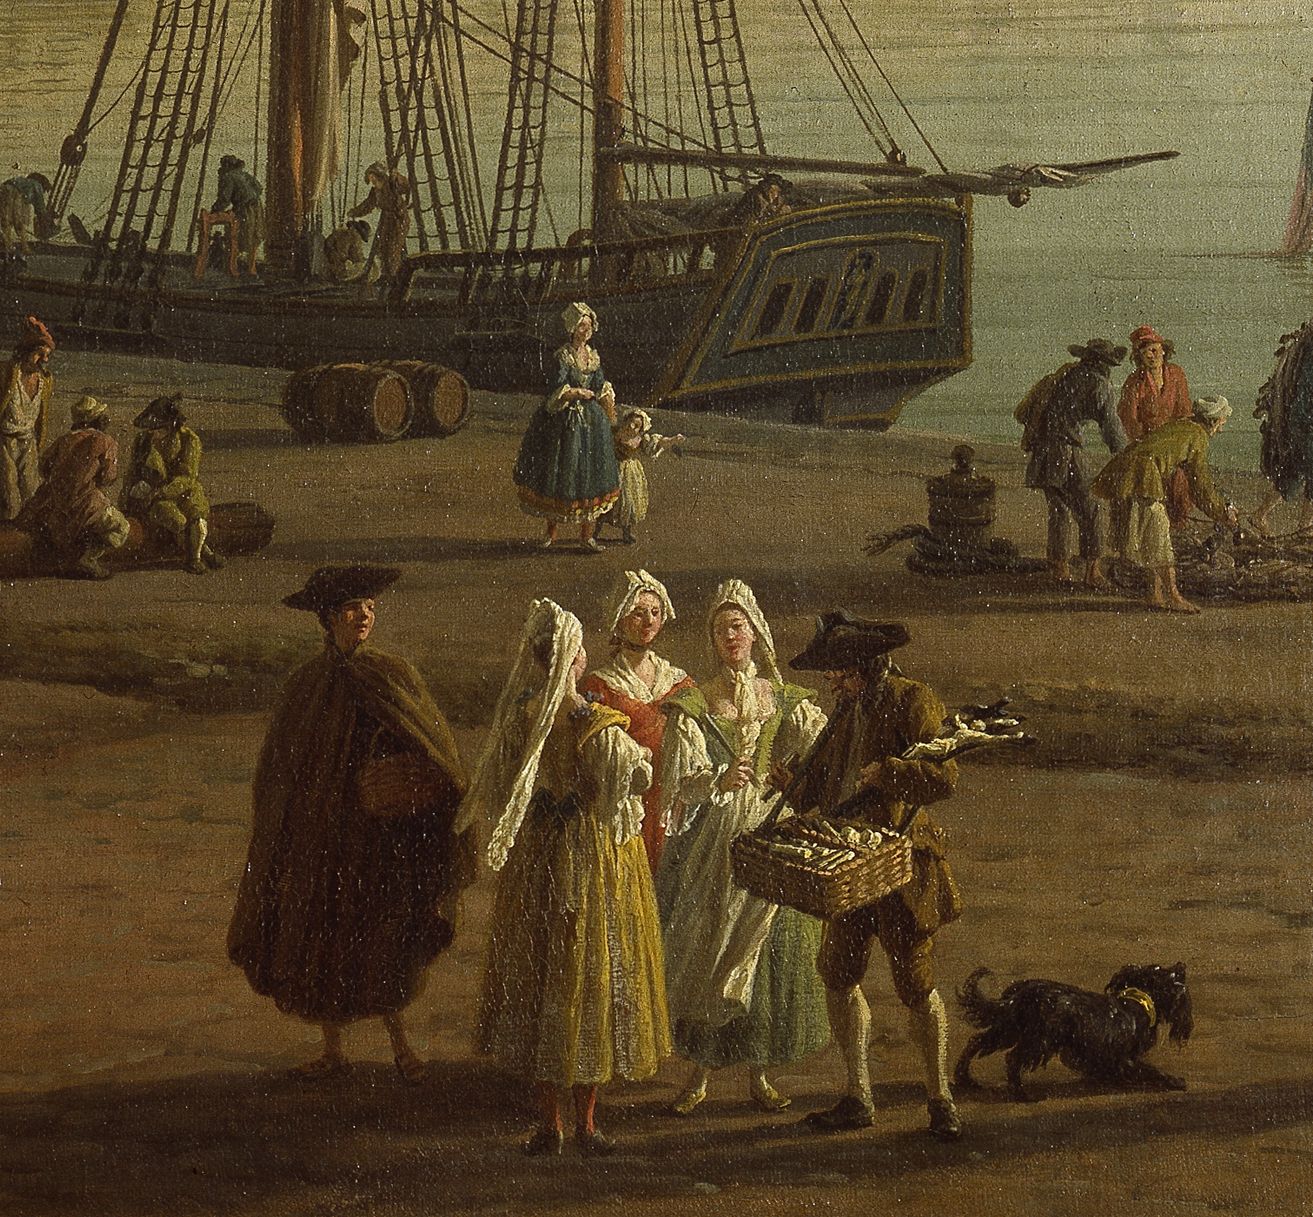 Vue du port de Dieppe (détail : marché aux poissons)